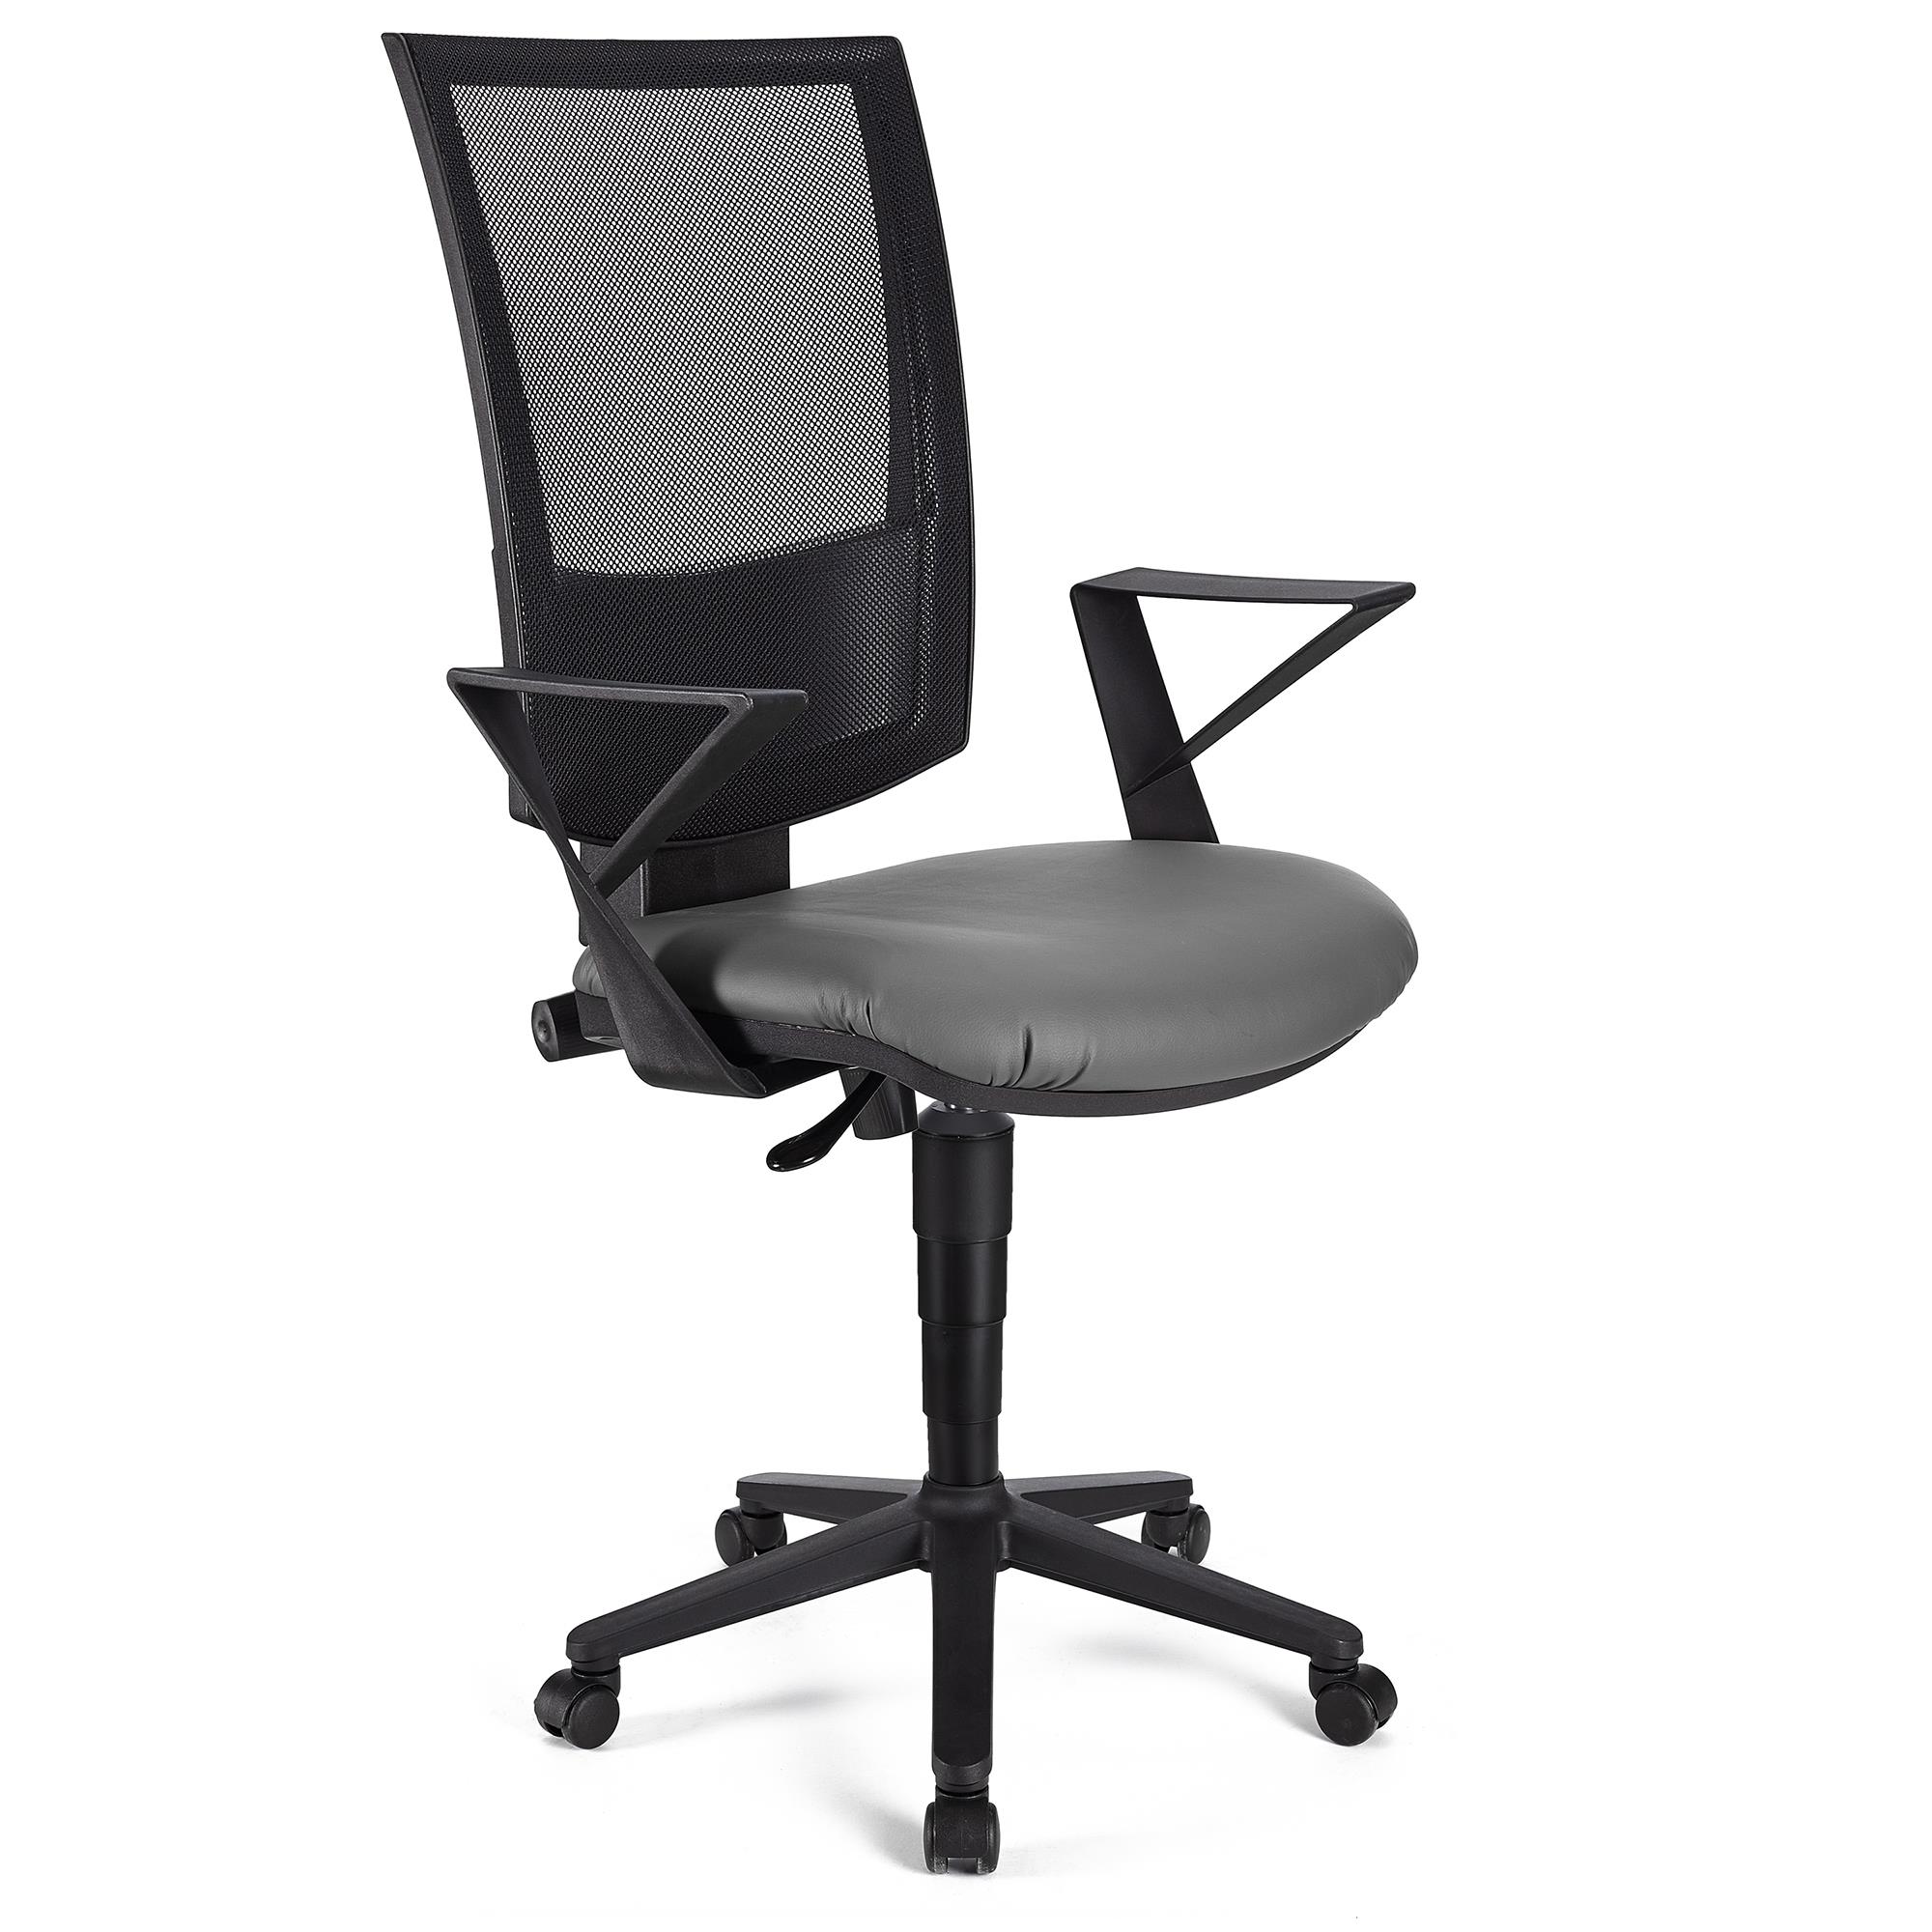 Bürostuhl PANDORA LEDER mit Armlehnen, Rückenlehne mit Netzbezug, dicke Polsterung, Farbe Grau